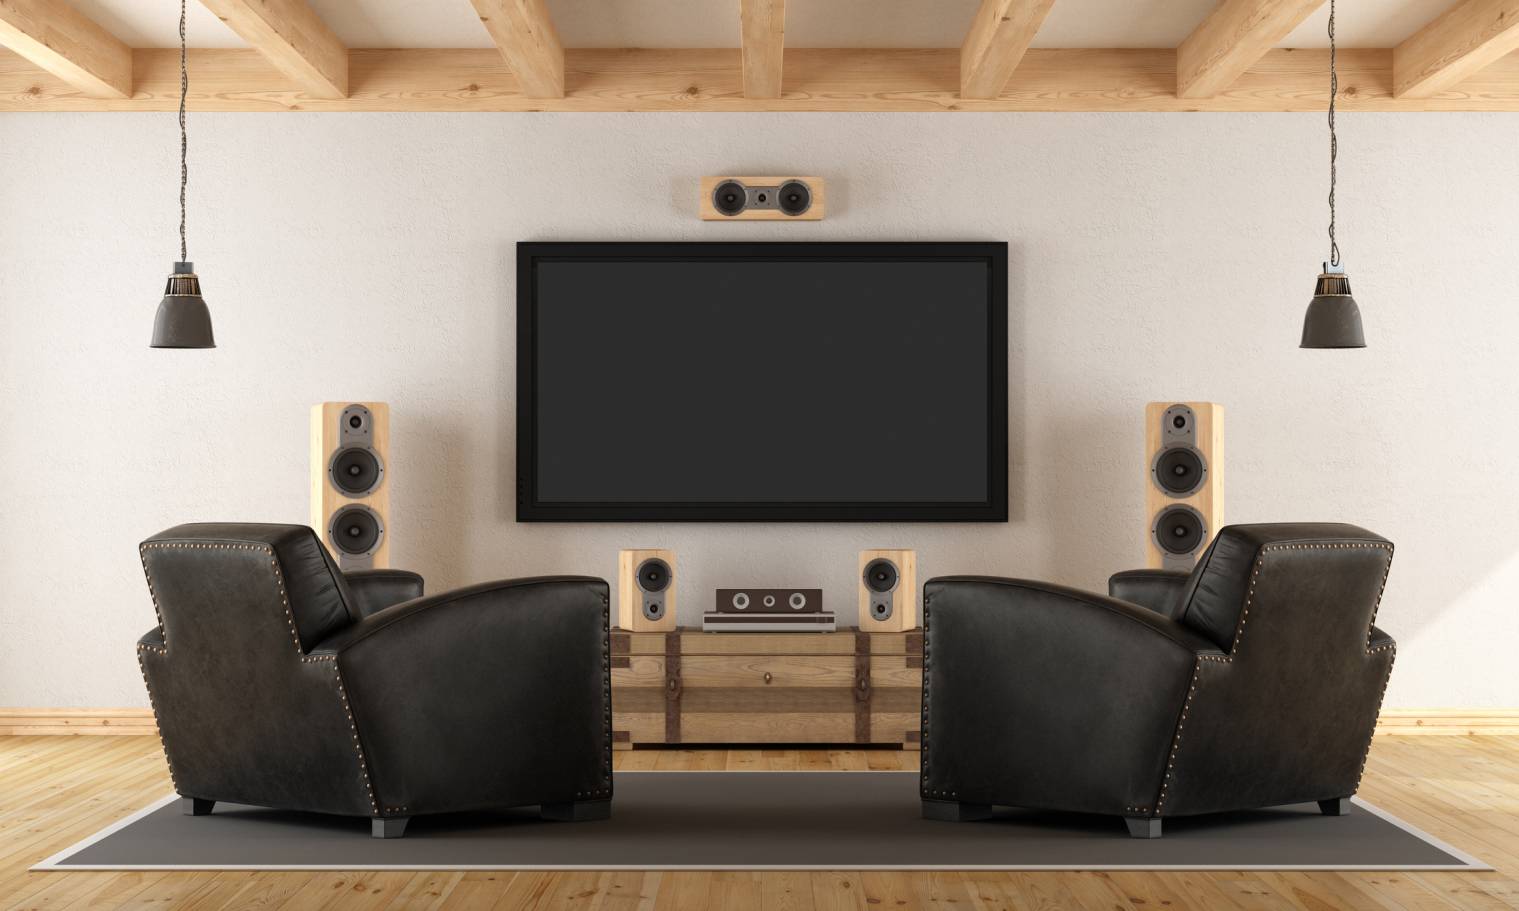 Home-cinéma : les différents formats audio Dolby, DTS etc.